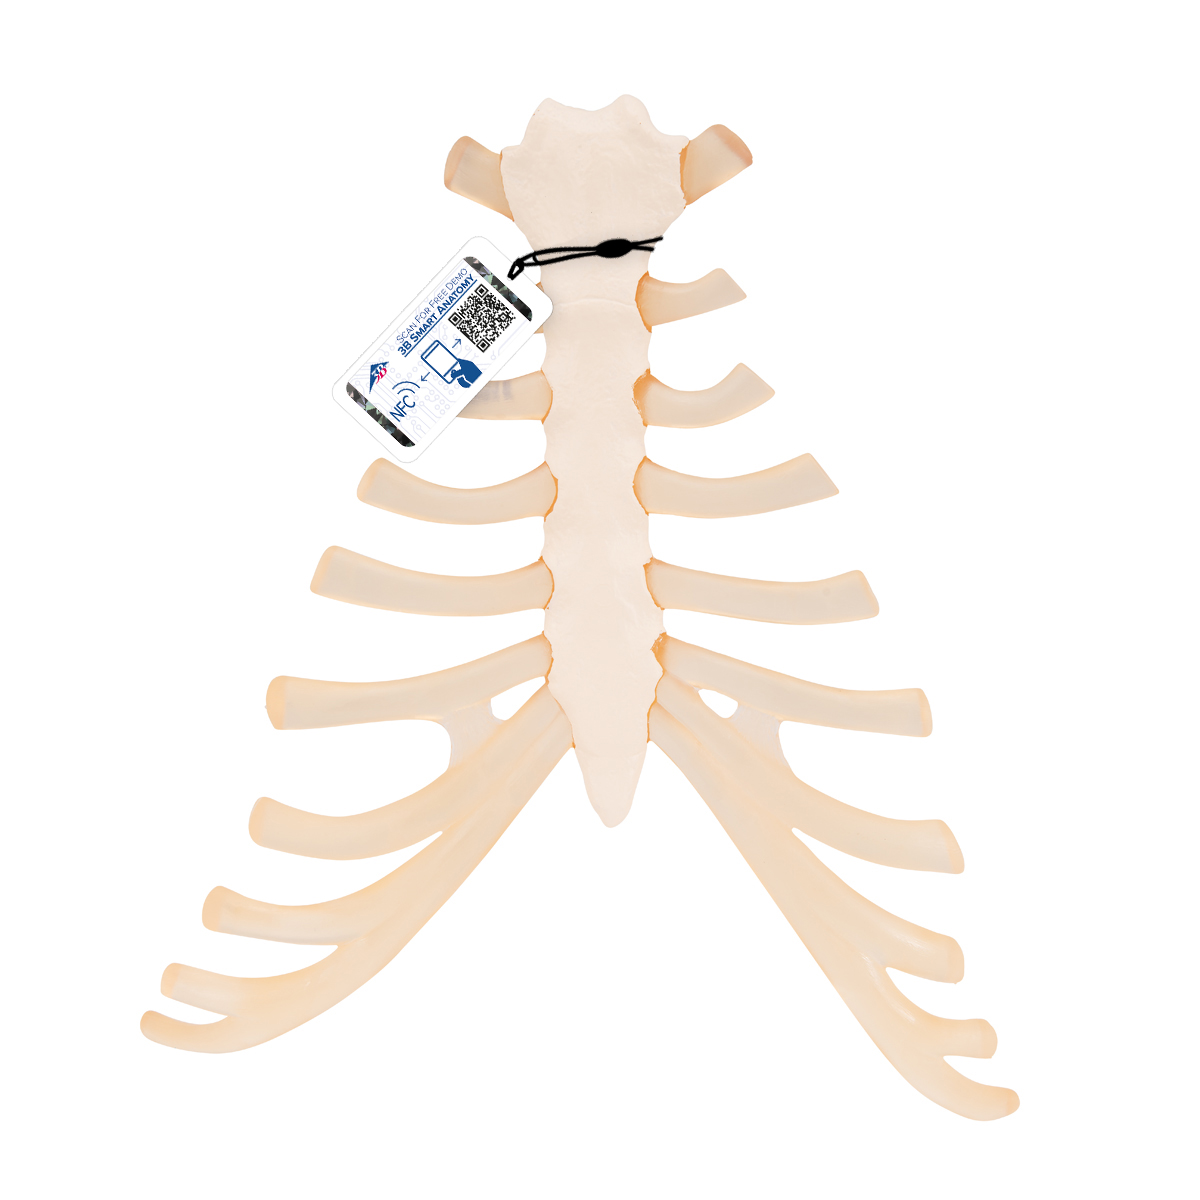 Brustbein Modell mit Rippenknorpel - 3B Smart Anatomy, Bestellnummer 1000136, A69, 3B Scientific